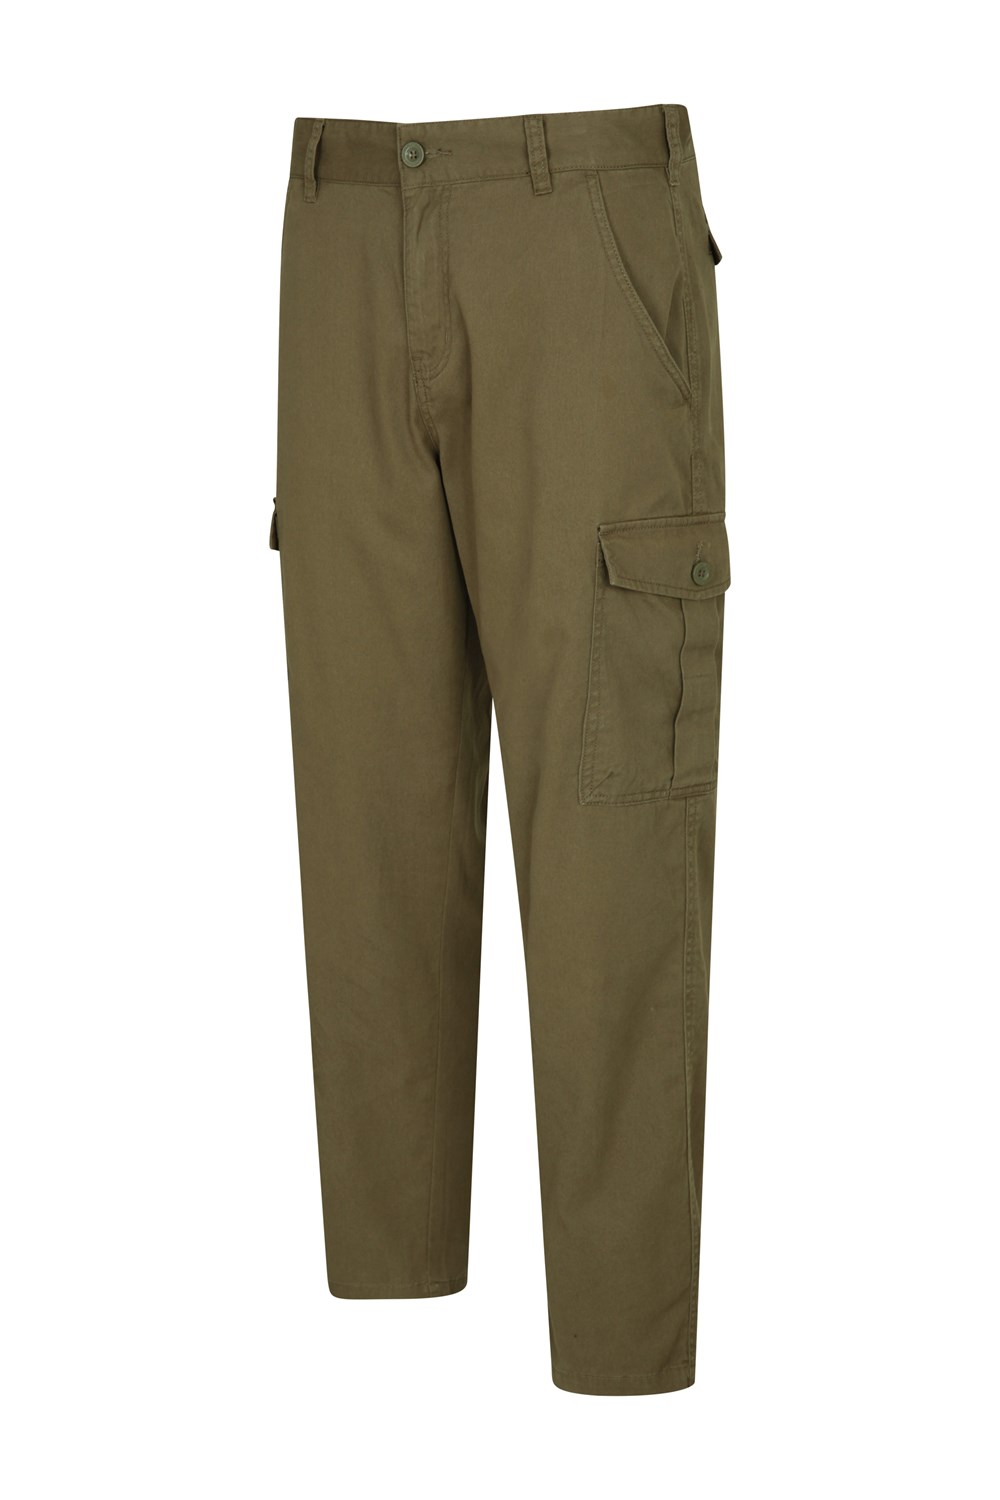 Mountain Warehouse Hommes Lakeside Short Cargo Pantalon Pantalon 